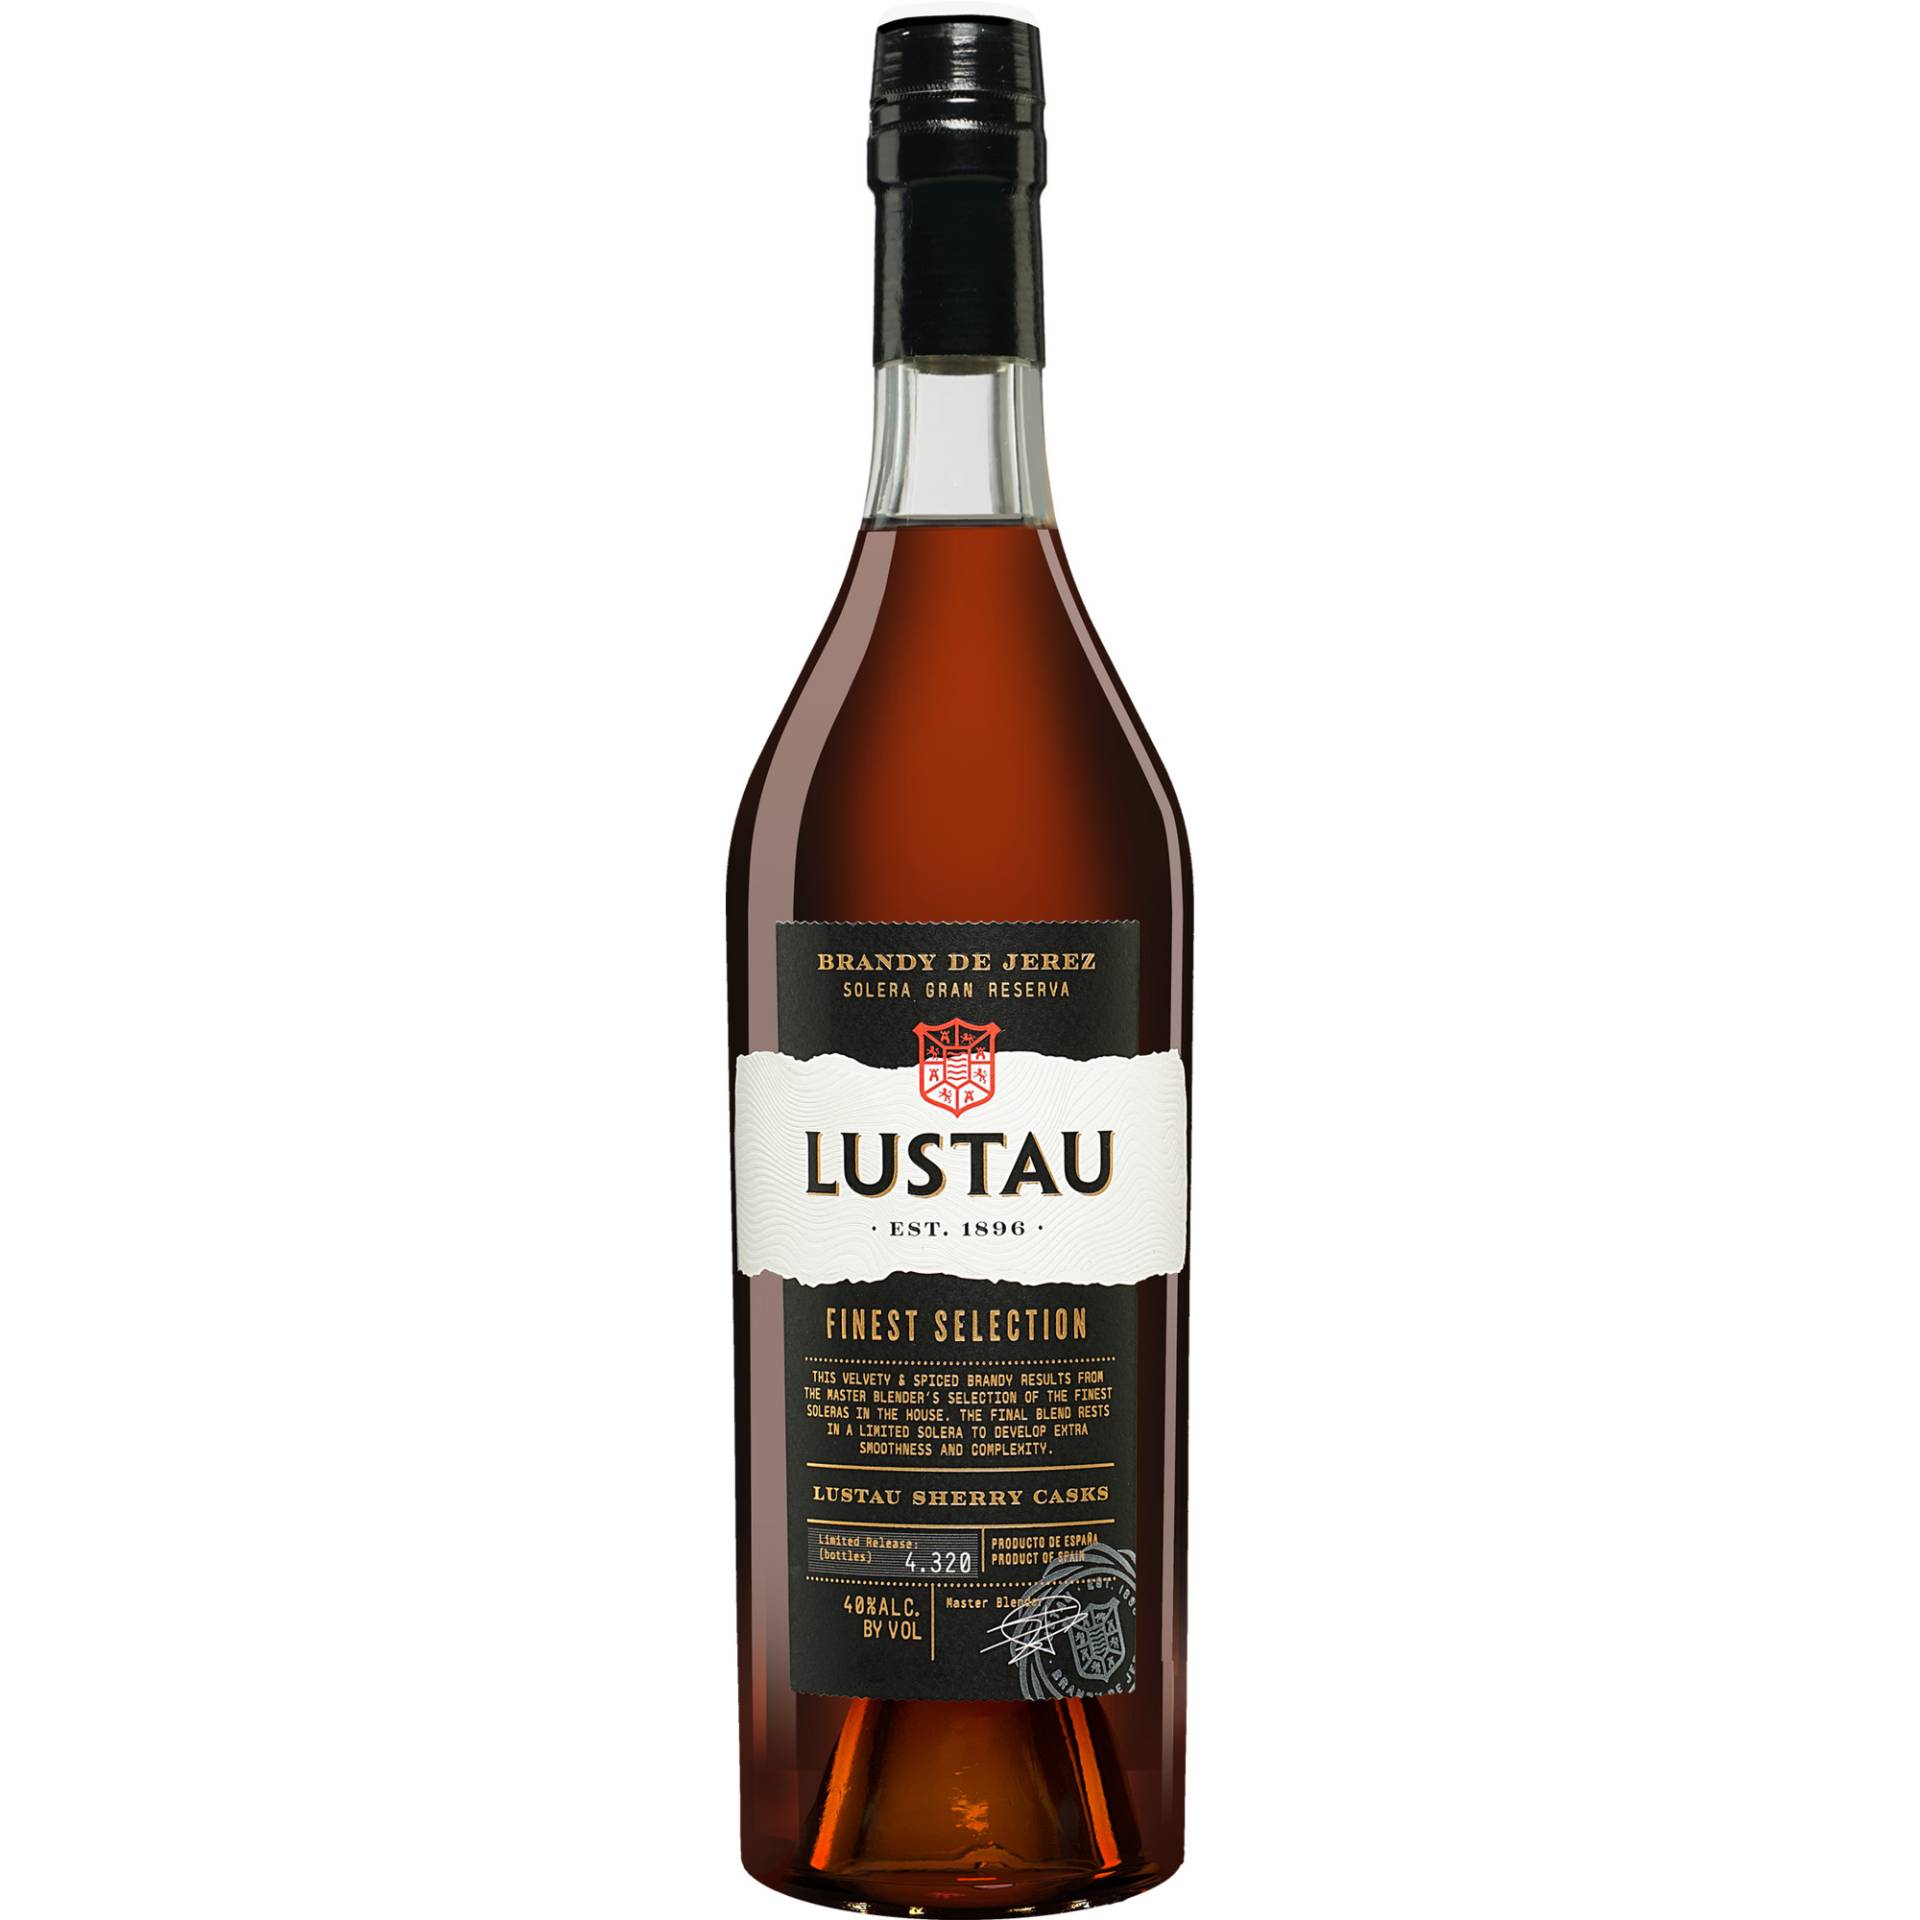 Brandy Lustau Solera Gran Reserva »Finest Selection« - 0,7 L.  0.7L 40% Vol. Brandy aus Spanien von Lustau